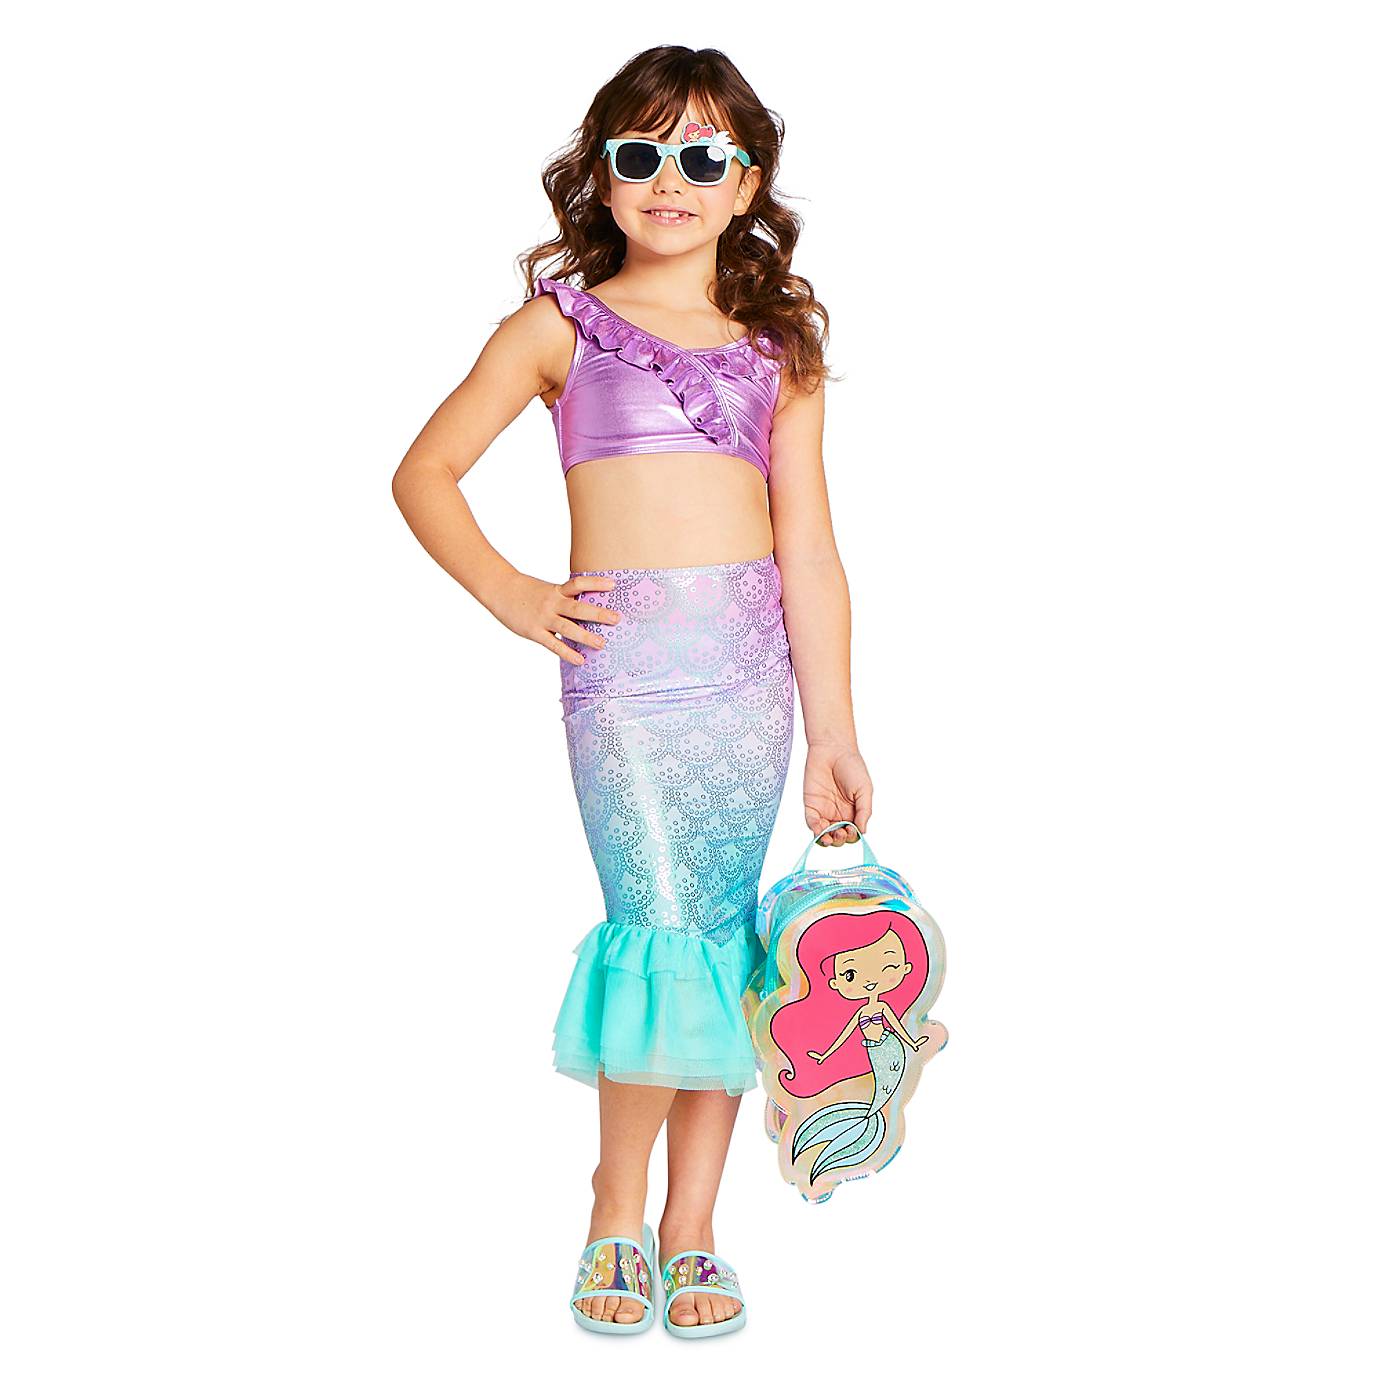 【DISNEY美国购回】现货Ariel美人鱼公主儿童分体游泳衣三件套